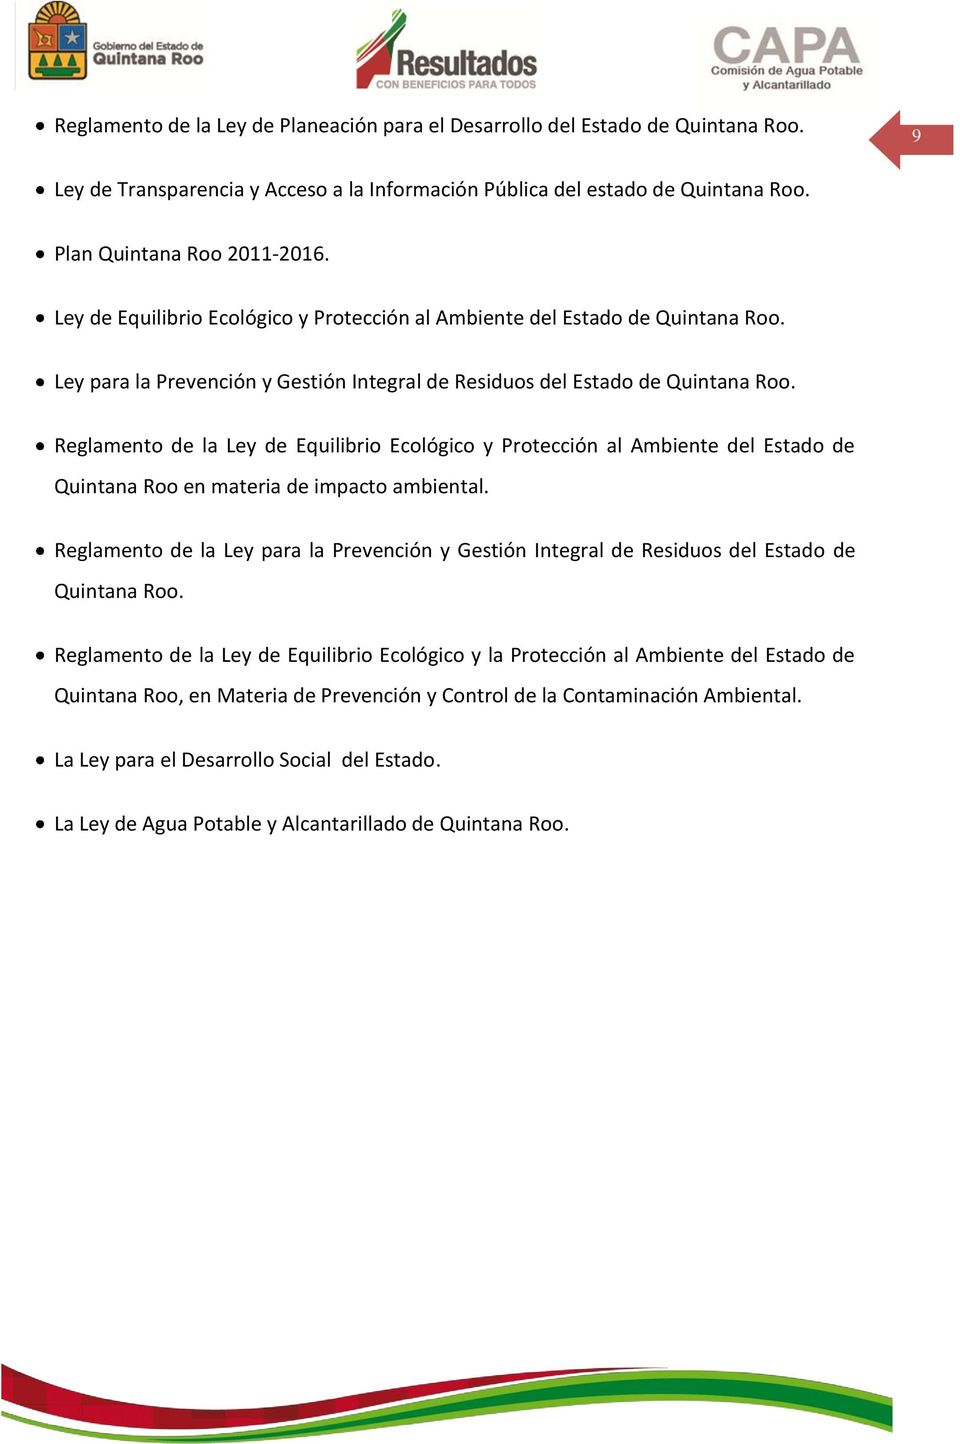 Reglamento de la Ley de Equilibrio Ecológico y Protección al Ambiente del Estado de Quintana Roo en materia de impacto ambiental.